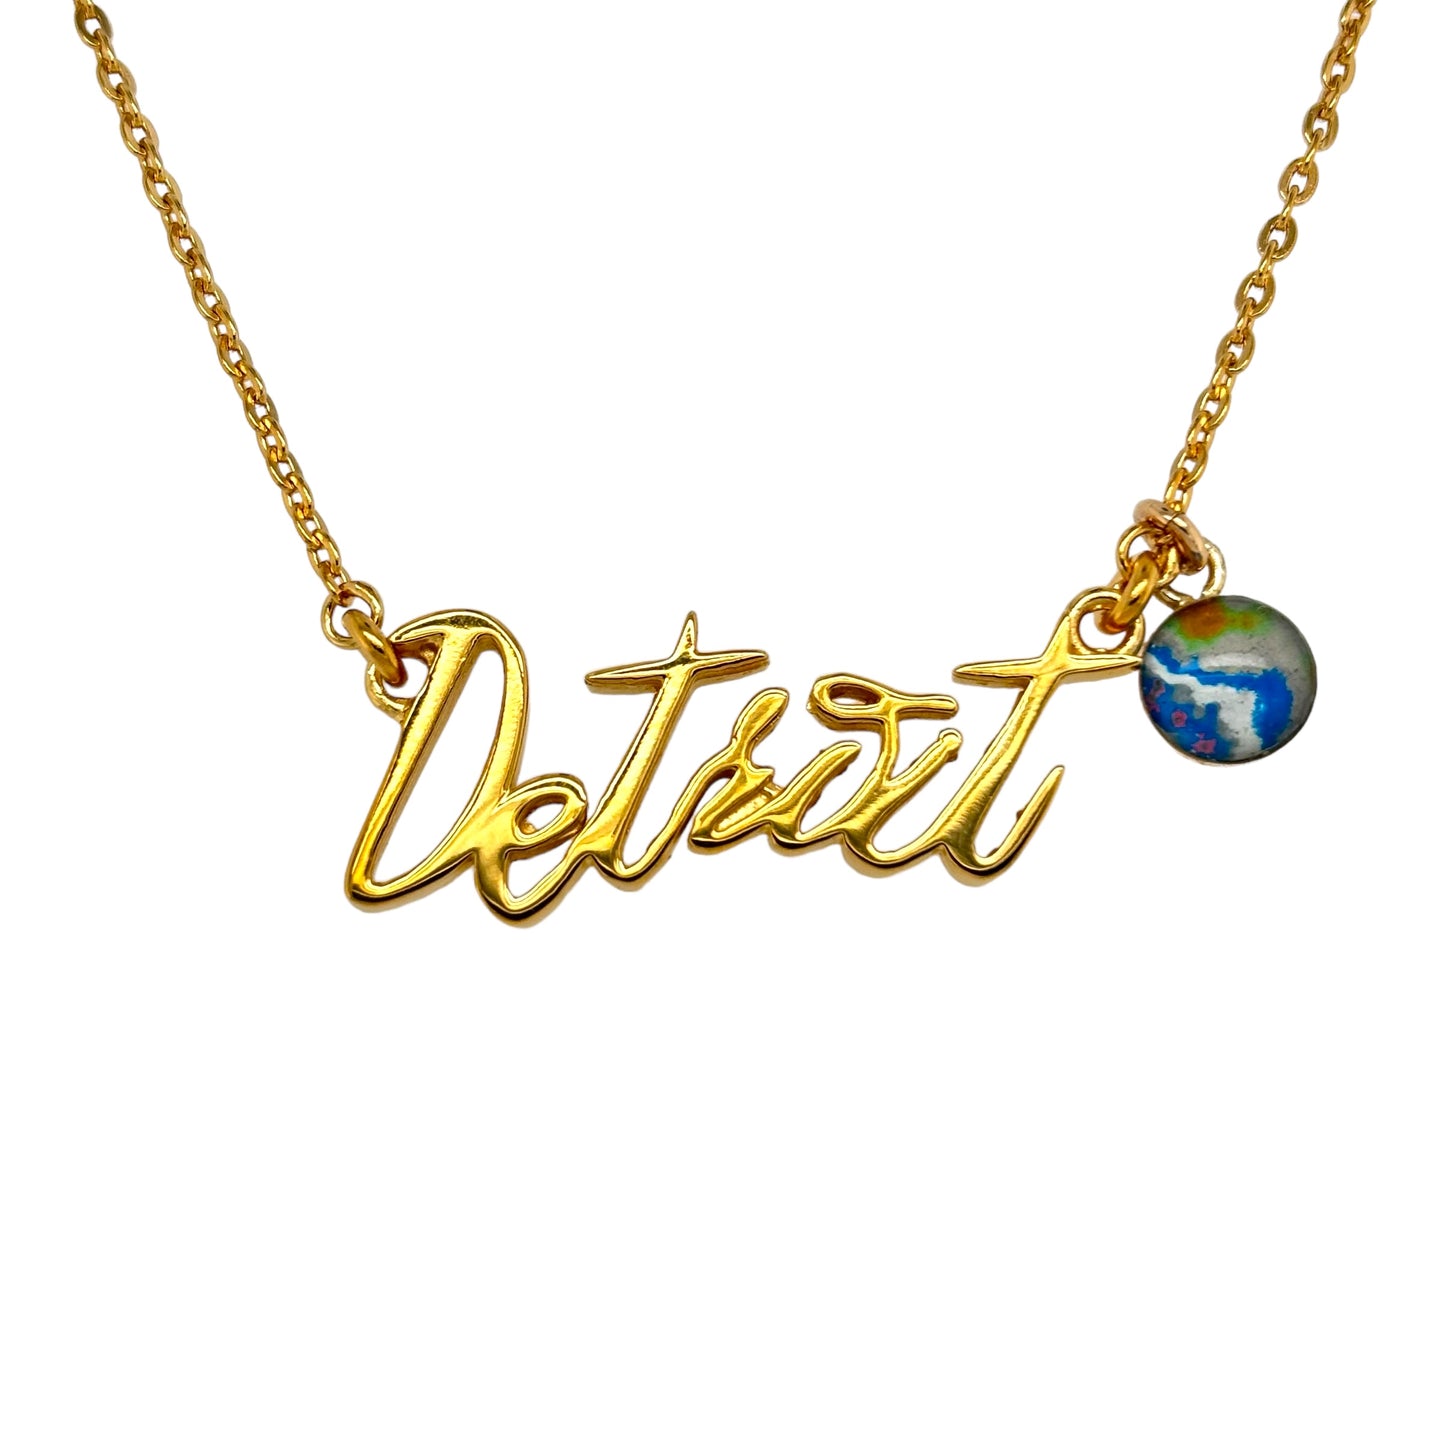 Detroit Necklace | Gold